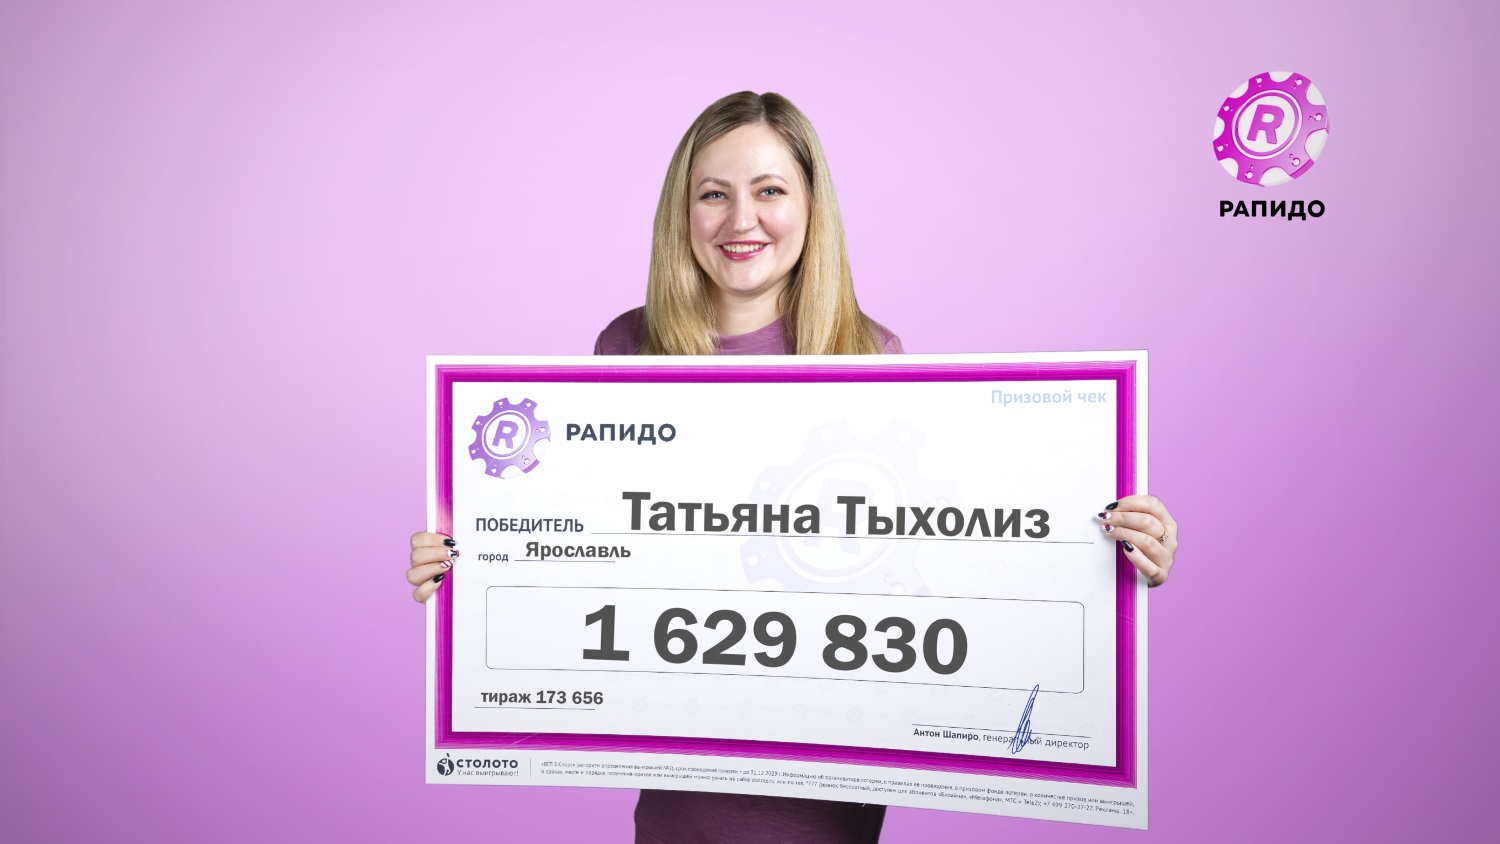 «Поезд пролетел над головой супруга, и мы выиграли в лотерею»: в Ярославле бухгалтер сорвала куш в размере 1,6 миллиона рублей